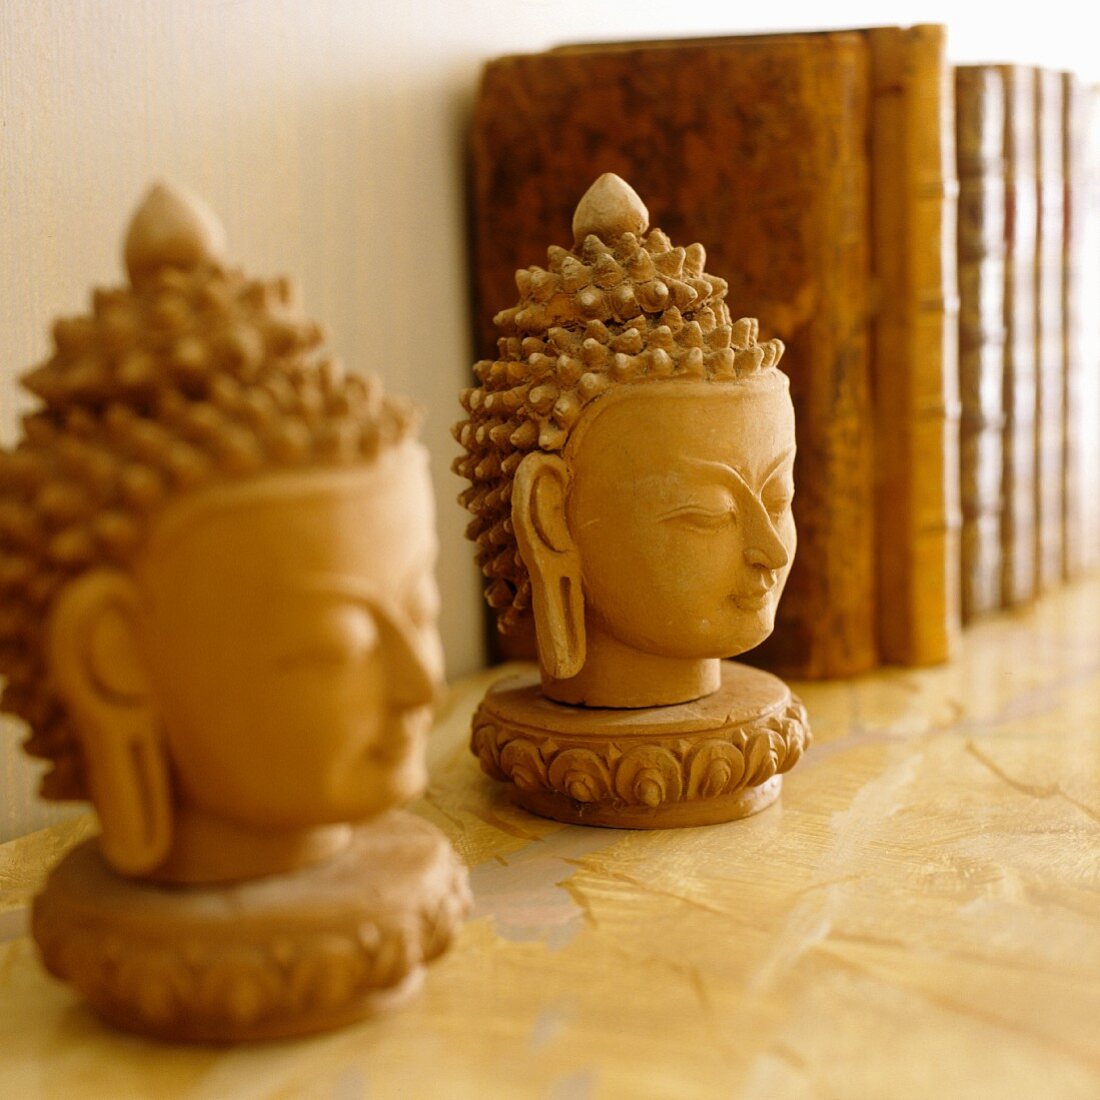 Buddhaköpfe aus Gips auf Ablage